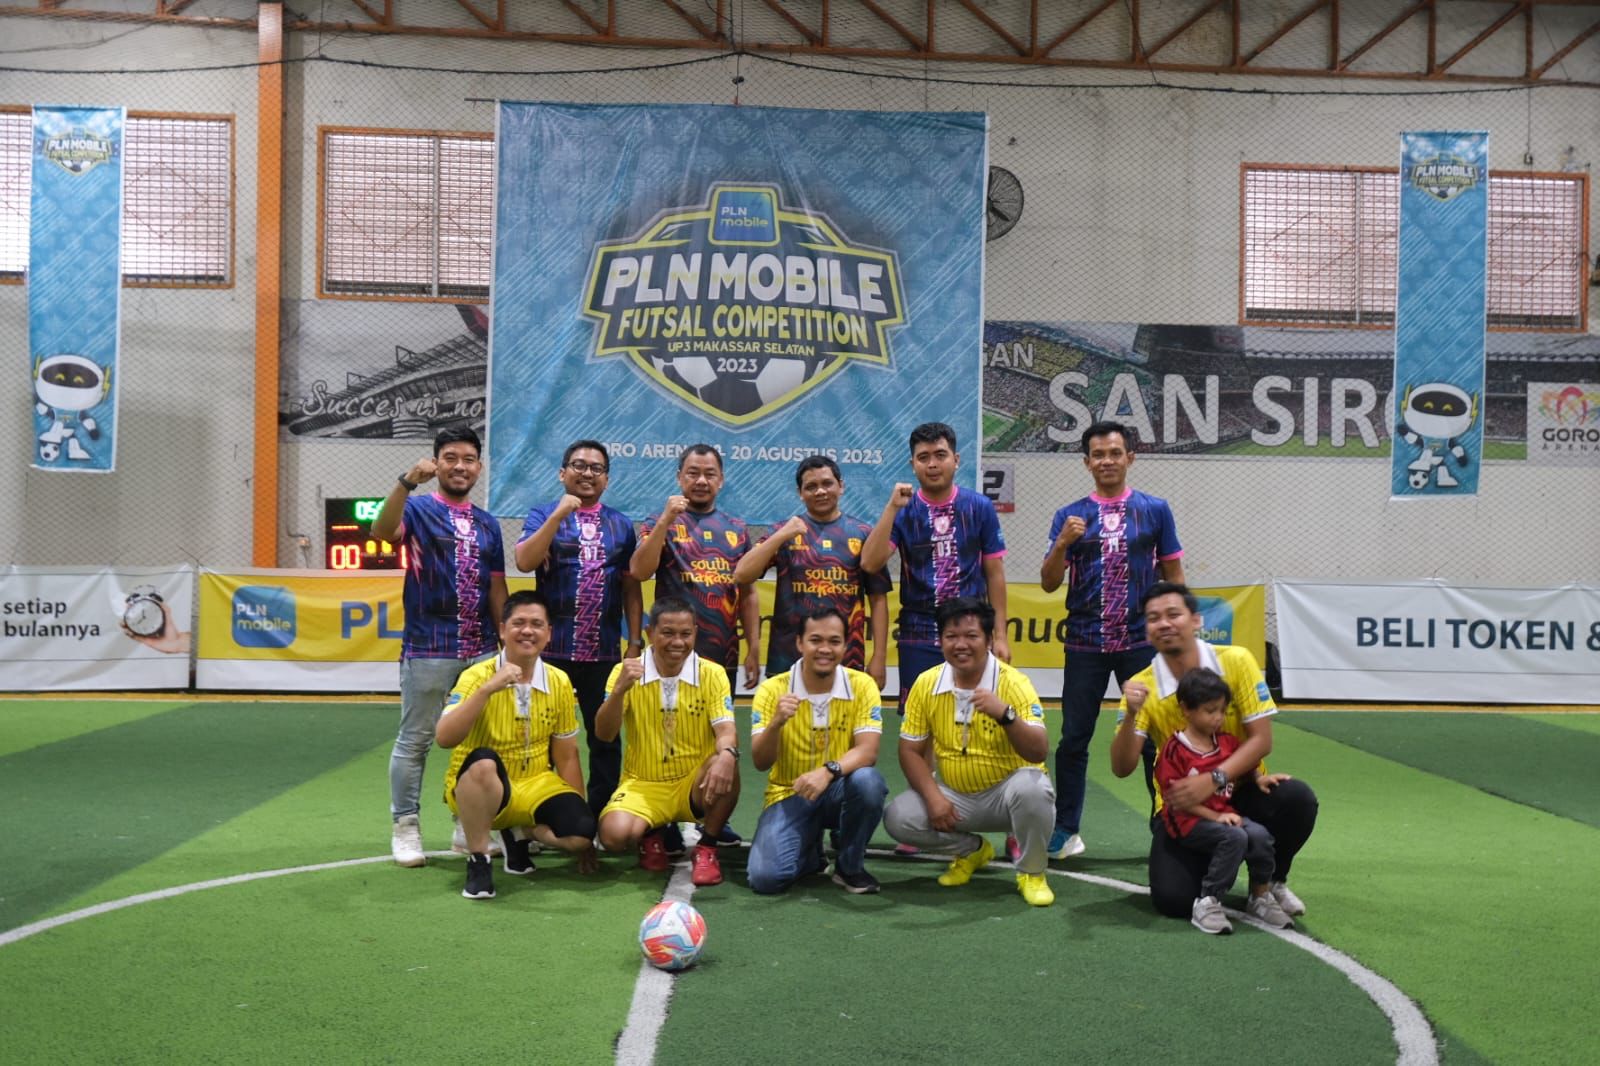 Tingkatkan Downloader PLN Mobile, PLN UP3 Makassar Selatan Gelar Kompetisi Futsal antar Instansi di Makassar  